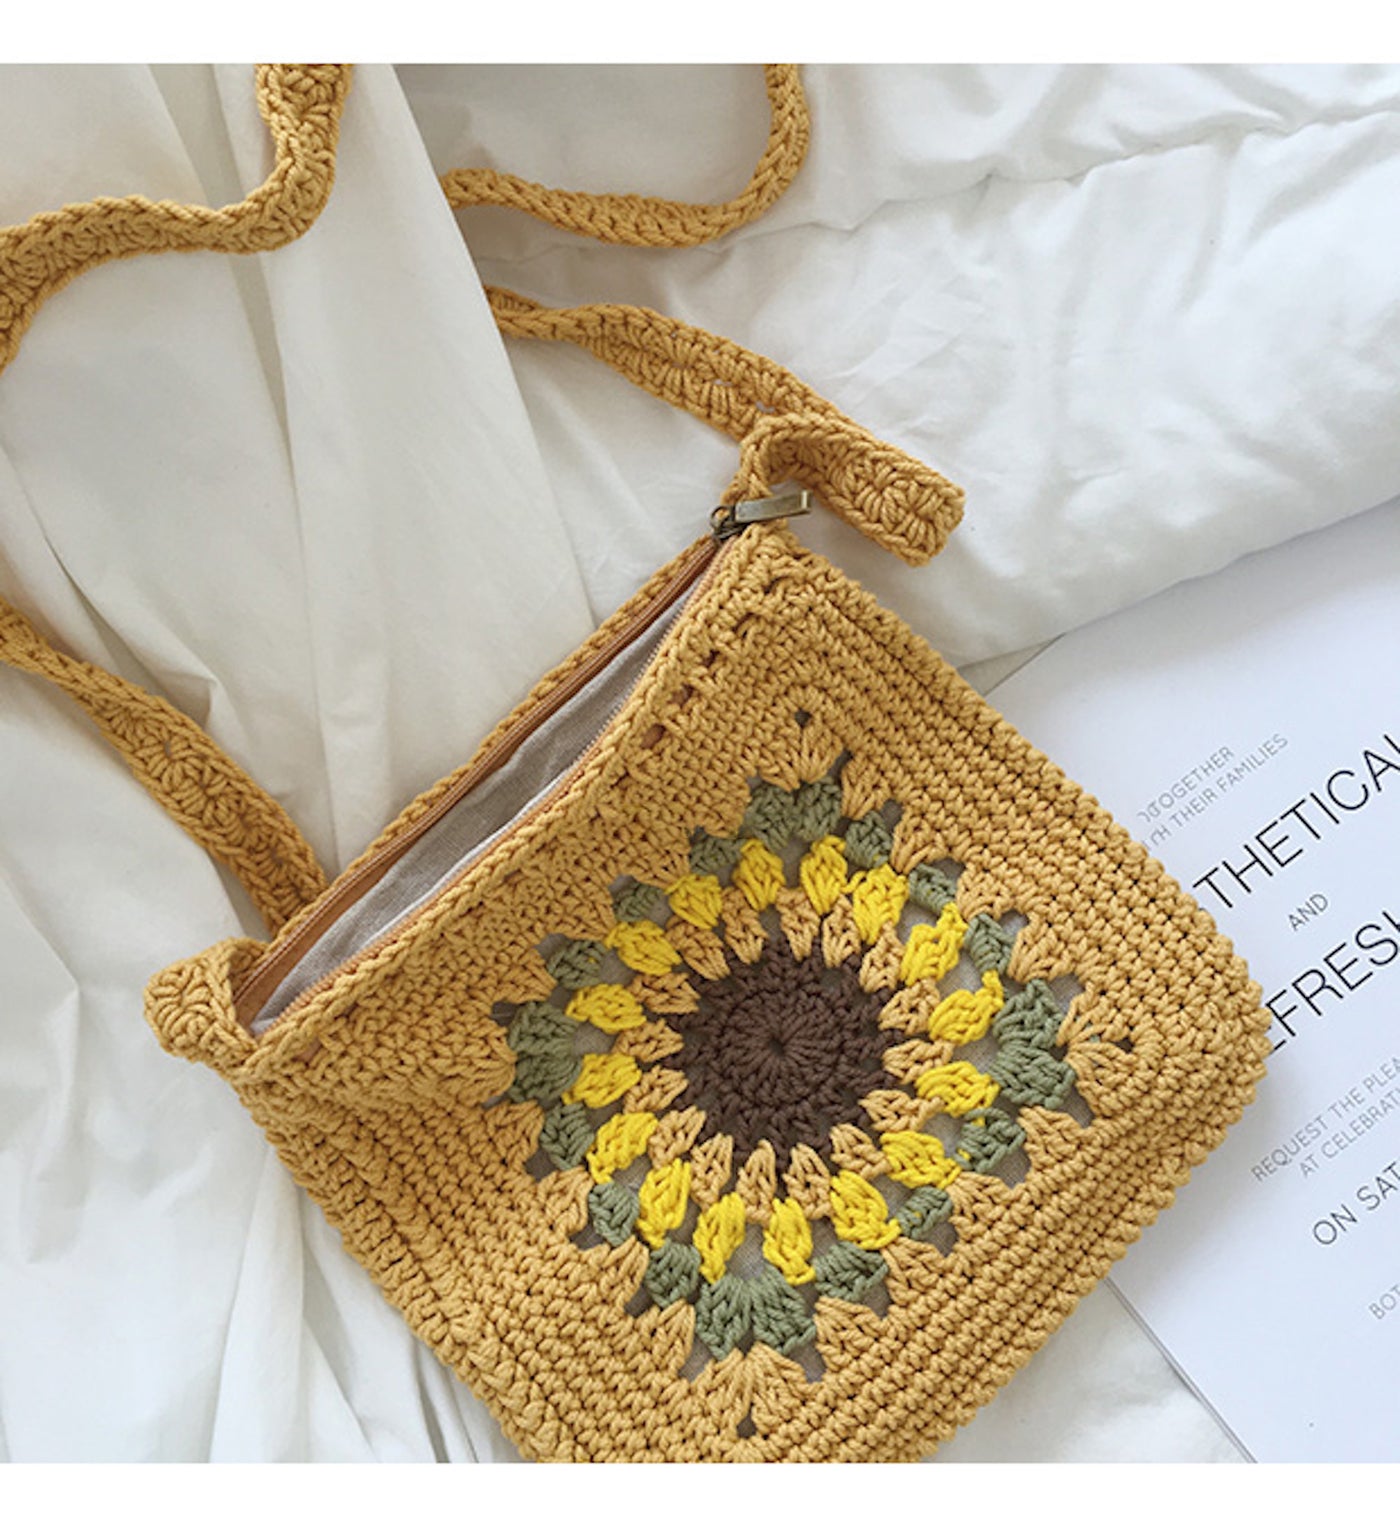 Buy Crochet Sunflower Bag Online in India - Etsy